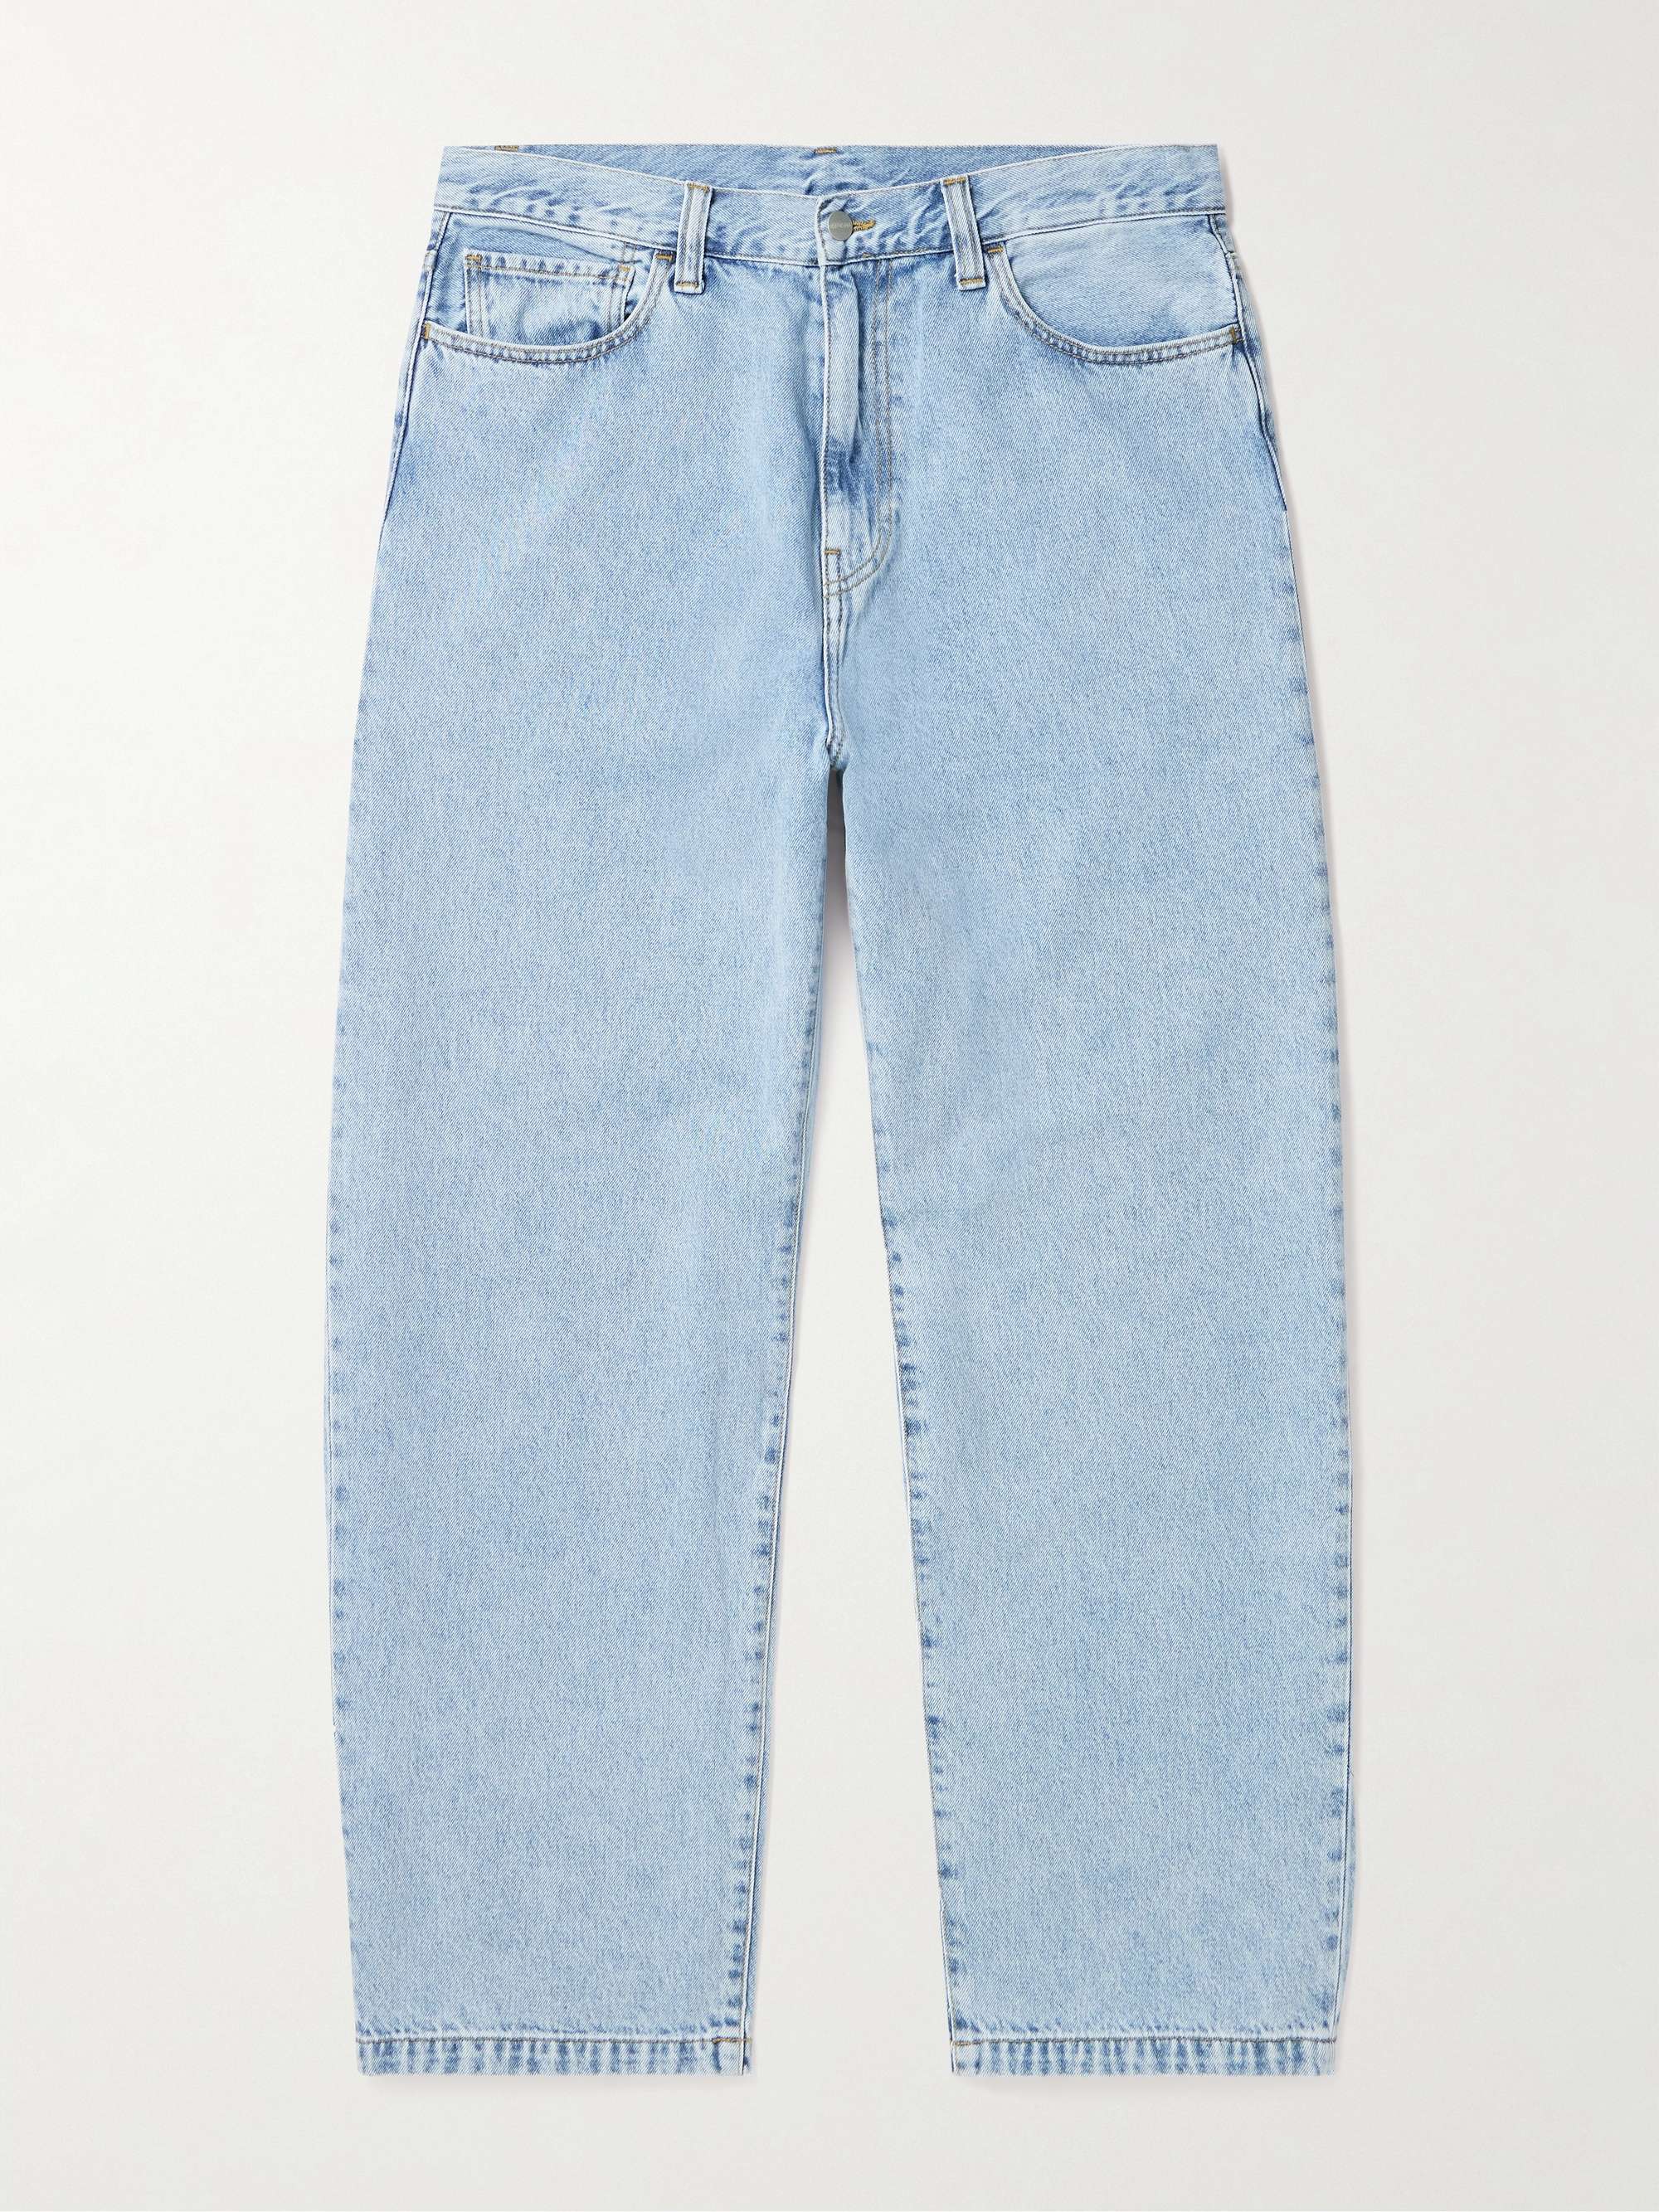 CARHARTT WIP Landon Wide-Leg Jeans for Men | MR PORTER